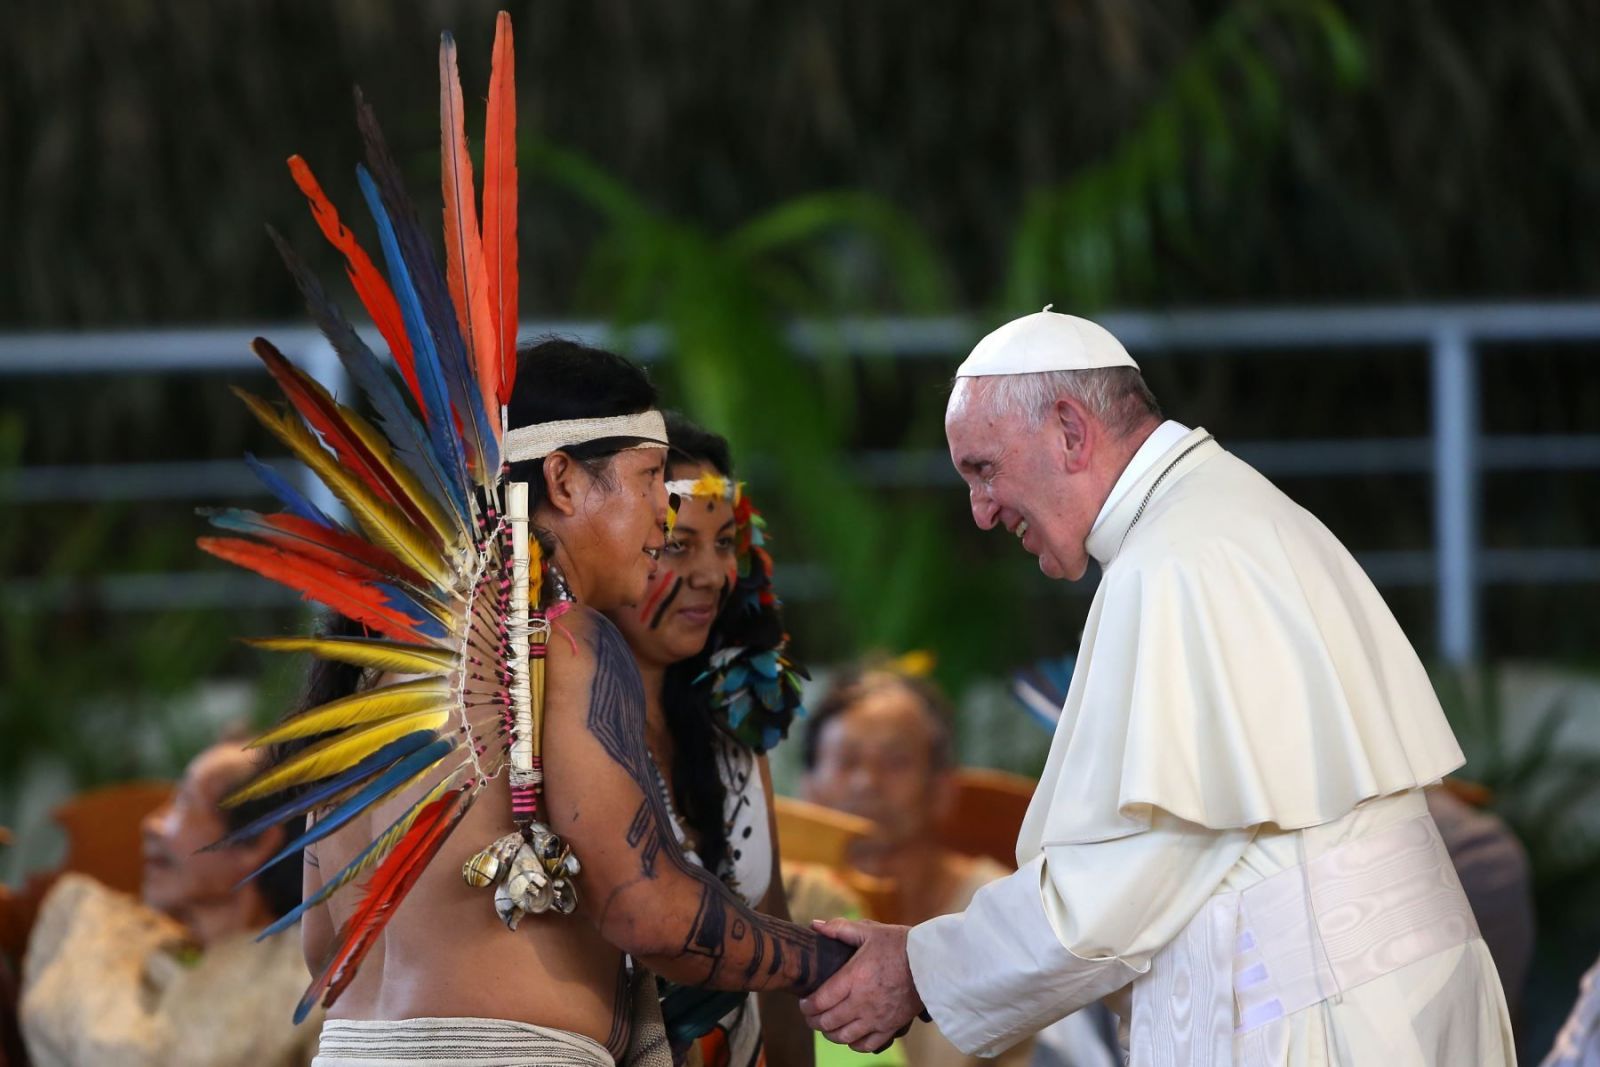 El Papa visitará Canadá en la búsqueda de la “reconciliación” de la iglesia católica con los indígenas